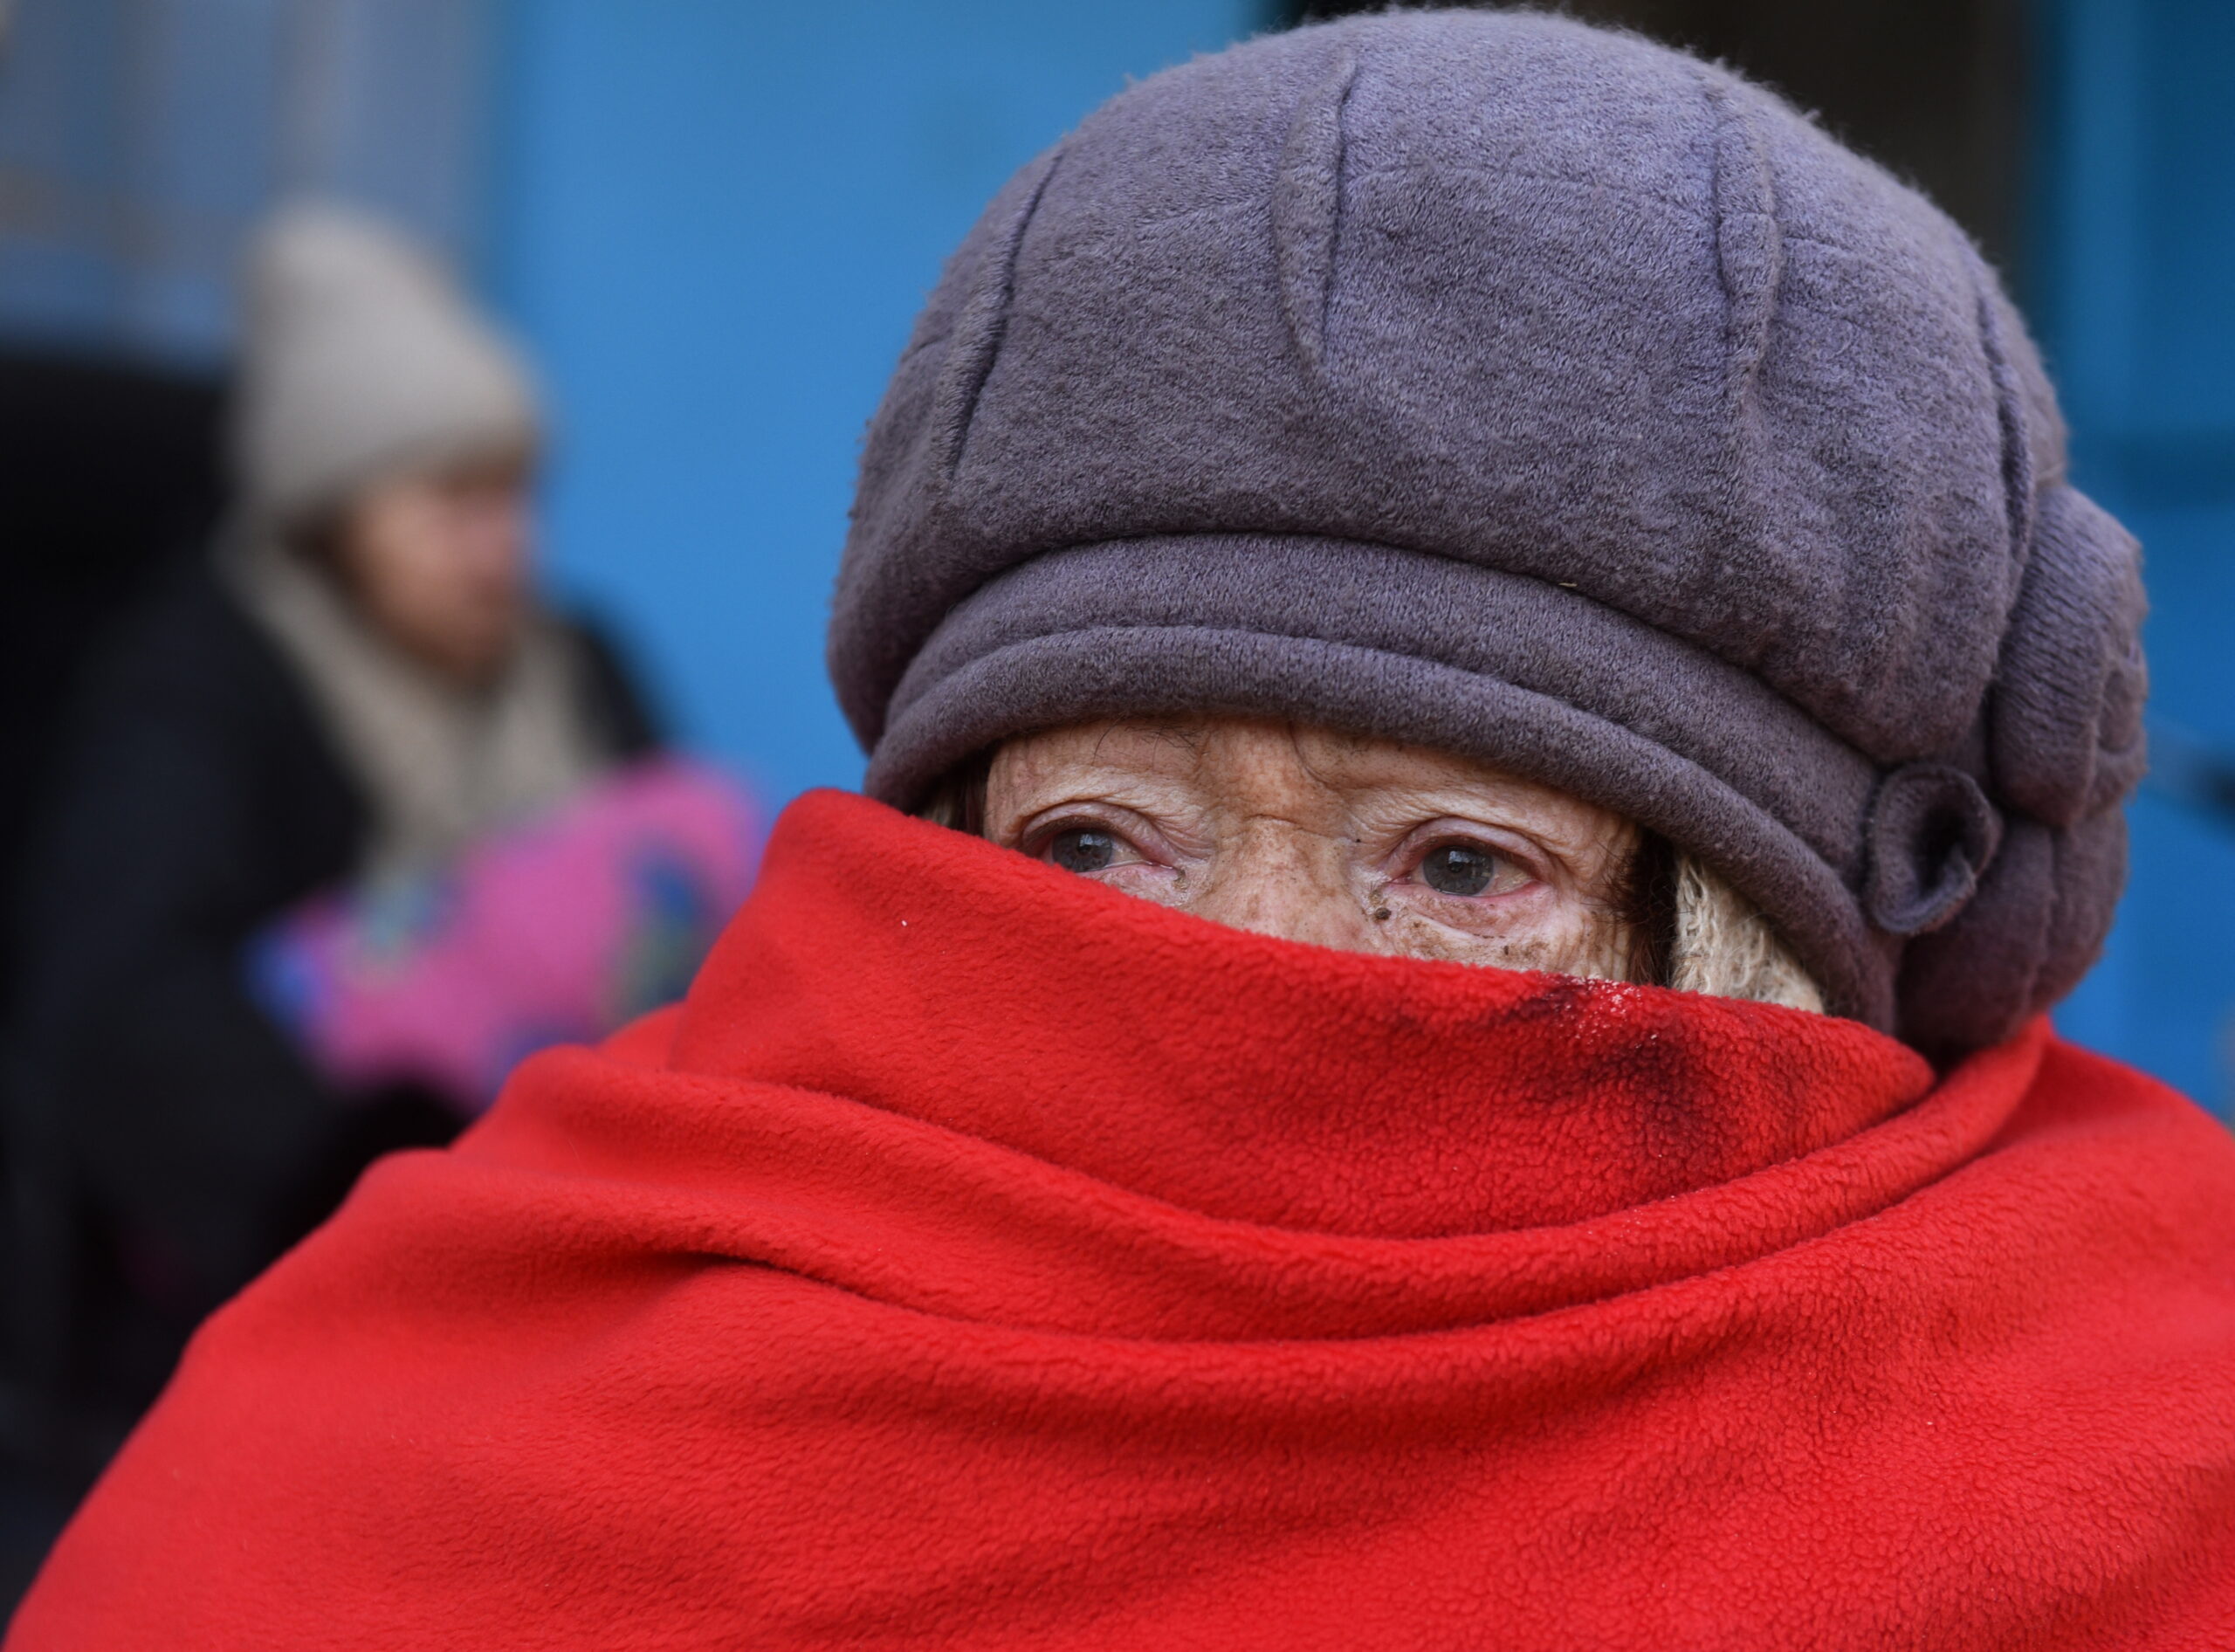 жилого дома в осажденном Мариуполе. Украина, 19 марта 2022 года. © Reuters / Stringer / Scanpix / Leta